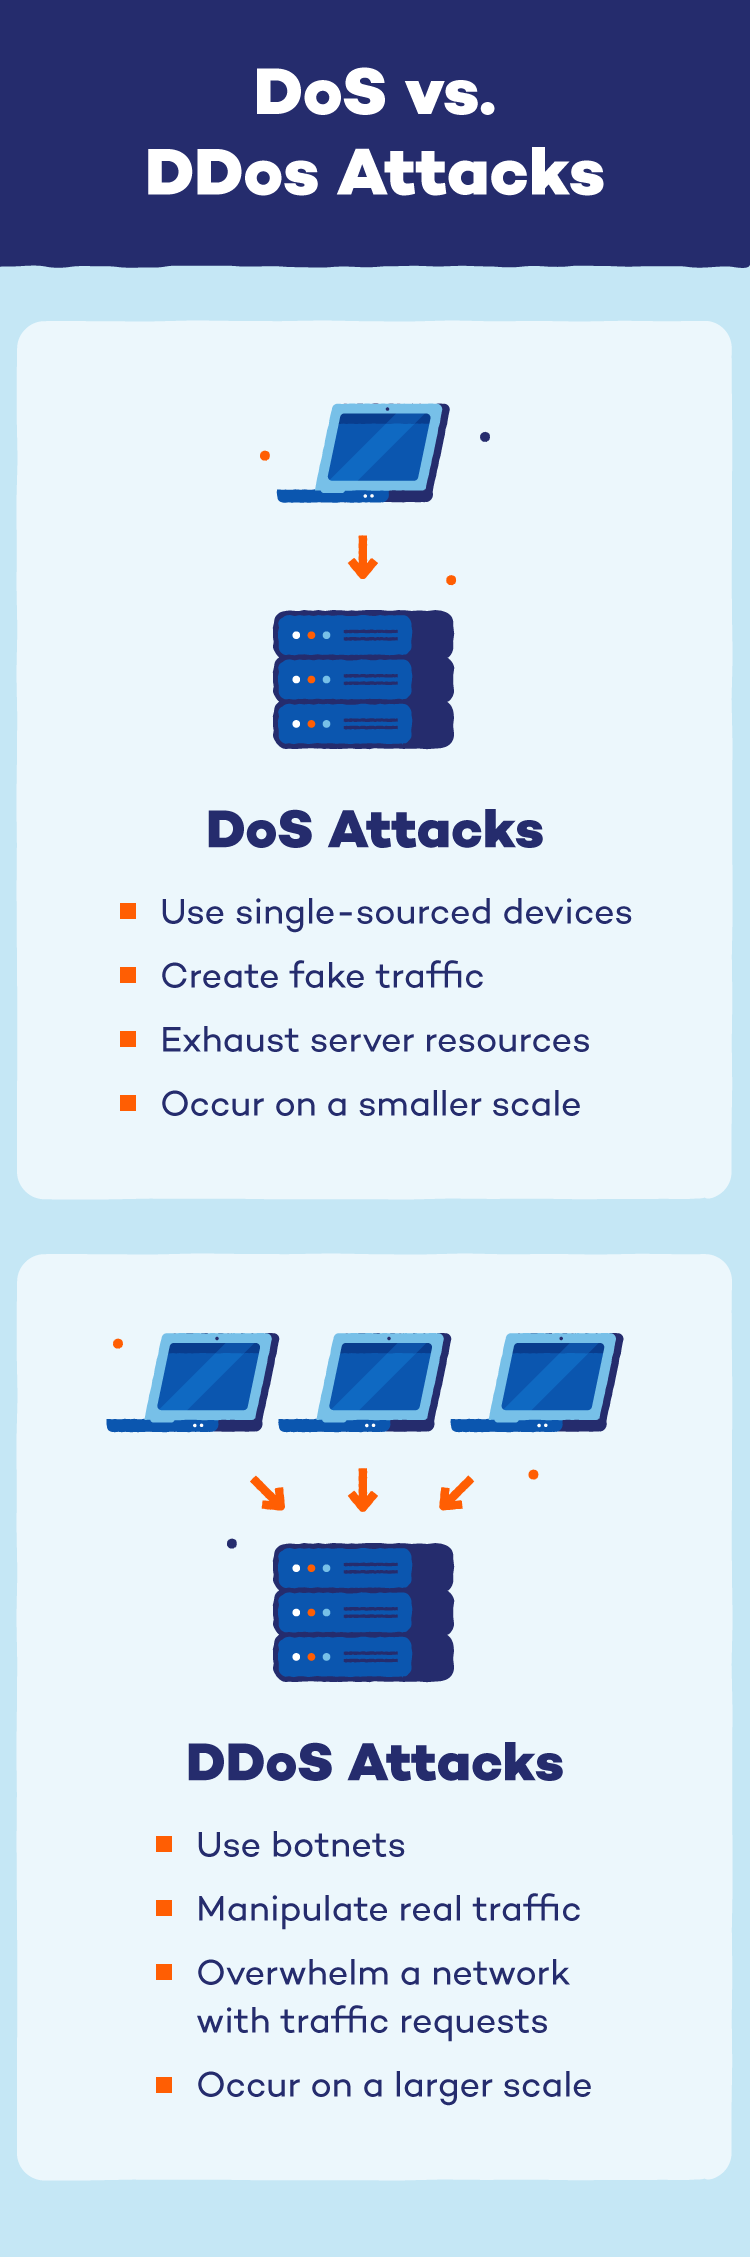 Illustration depicting DoS vs. DDos attacks